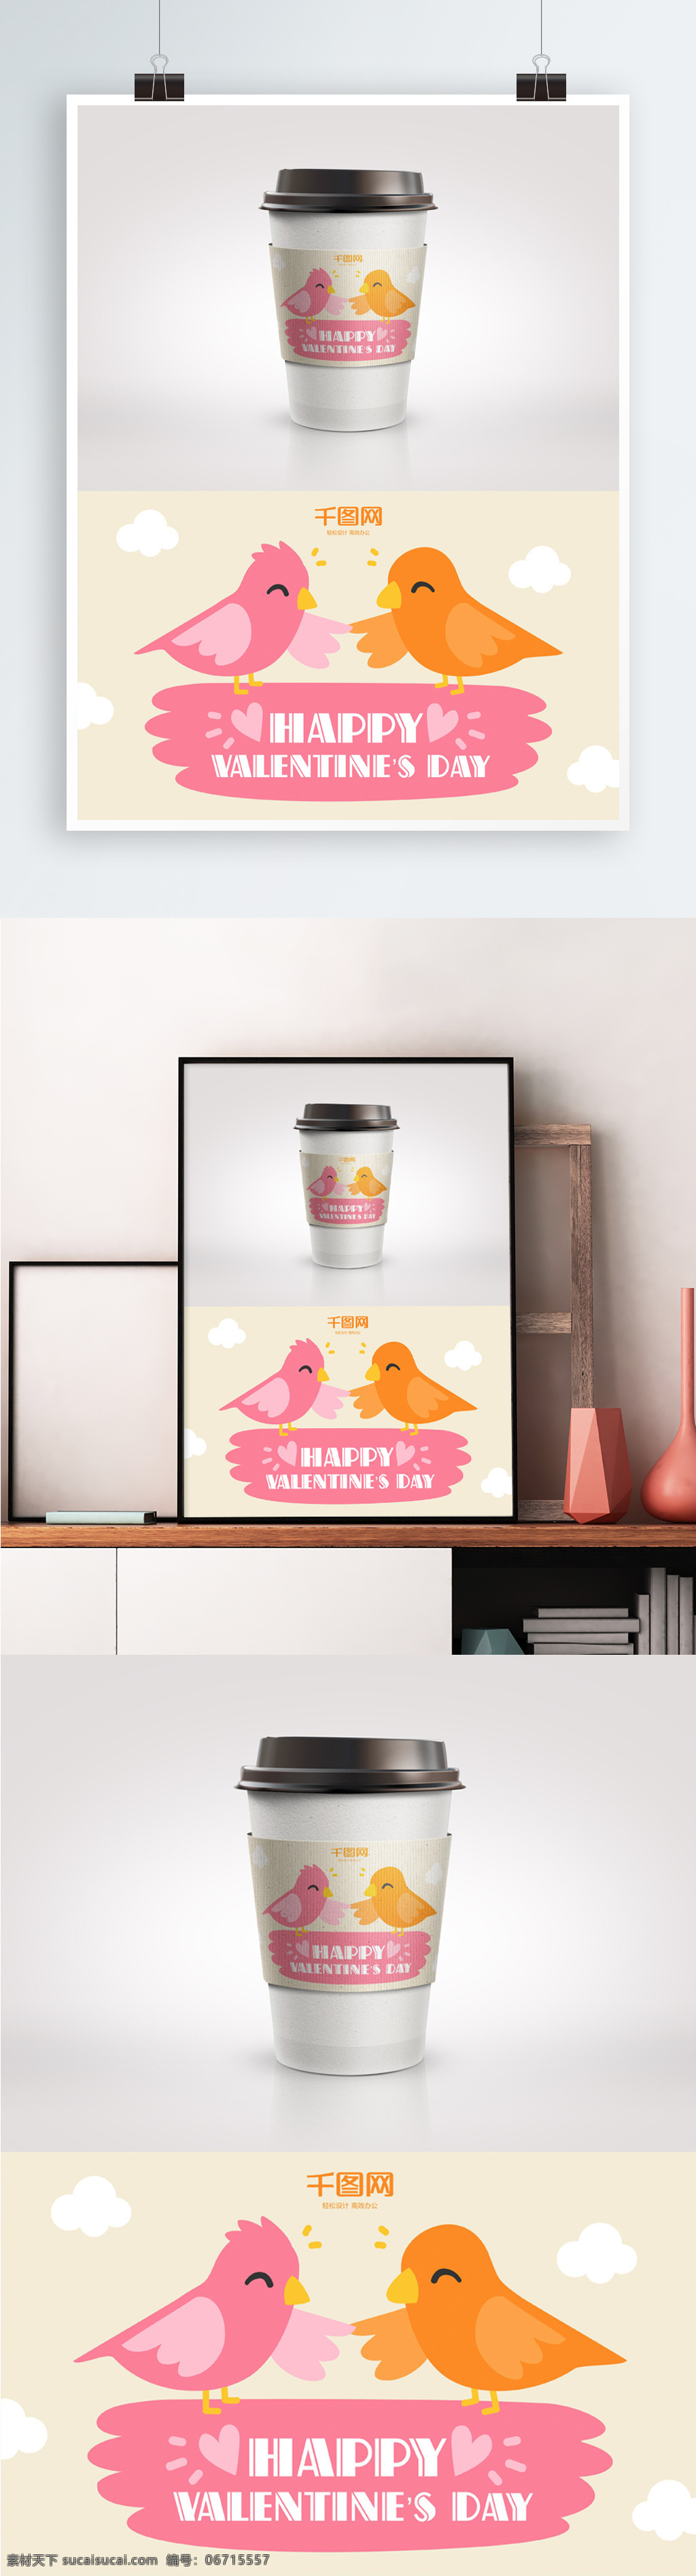 情人节 可爱 卡通 小鸟 杯 套 包装设计 杯套 黄色 精美包装 咖啡杯